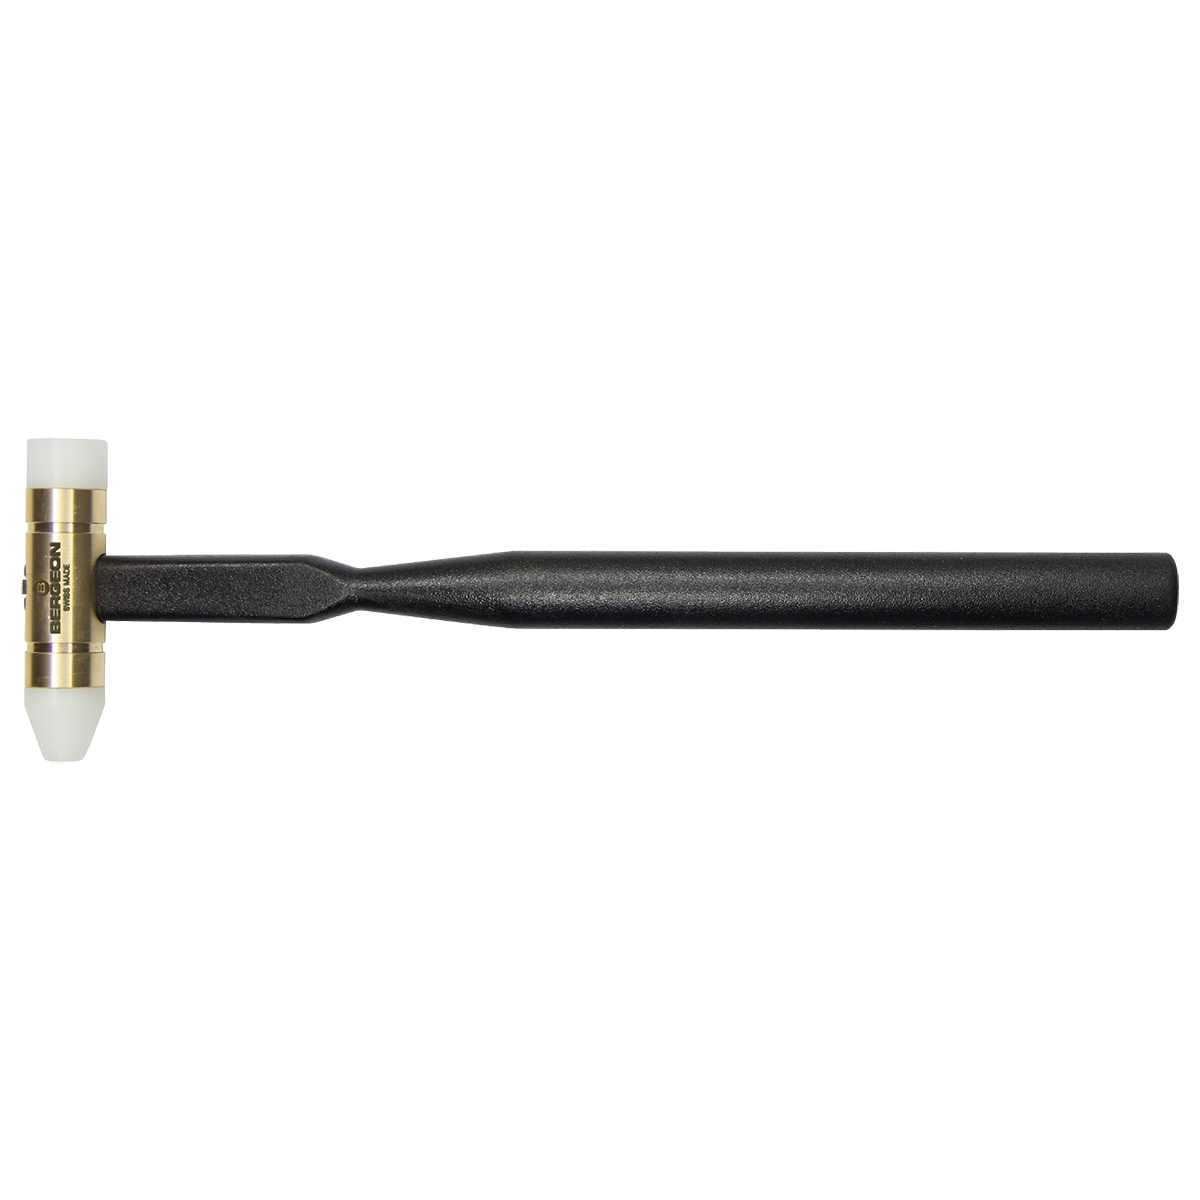 Bergeon soft-face hammer, 85 g, head Ø 9 - 16 mm, length 230 mm